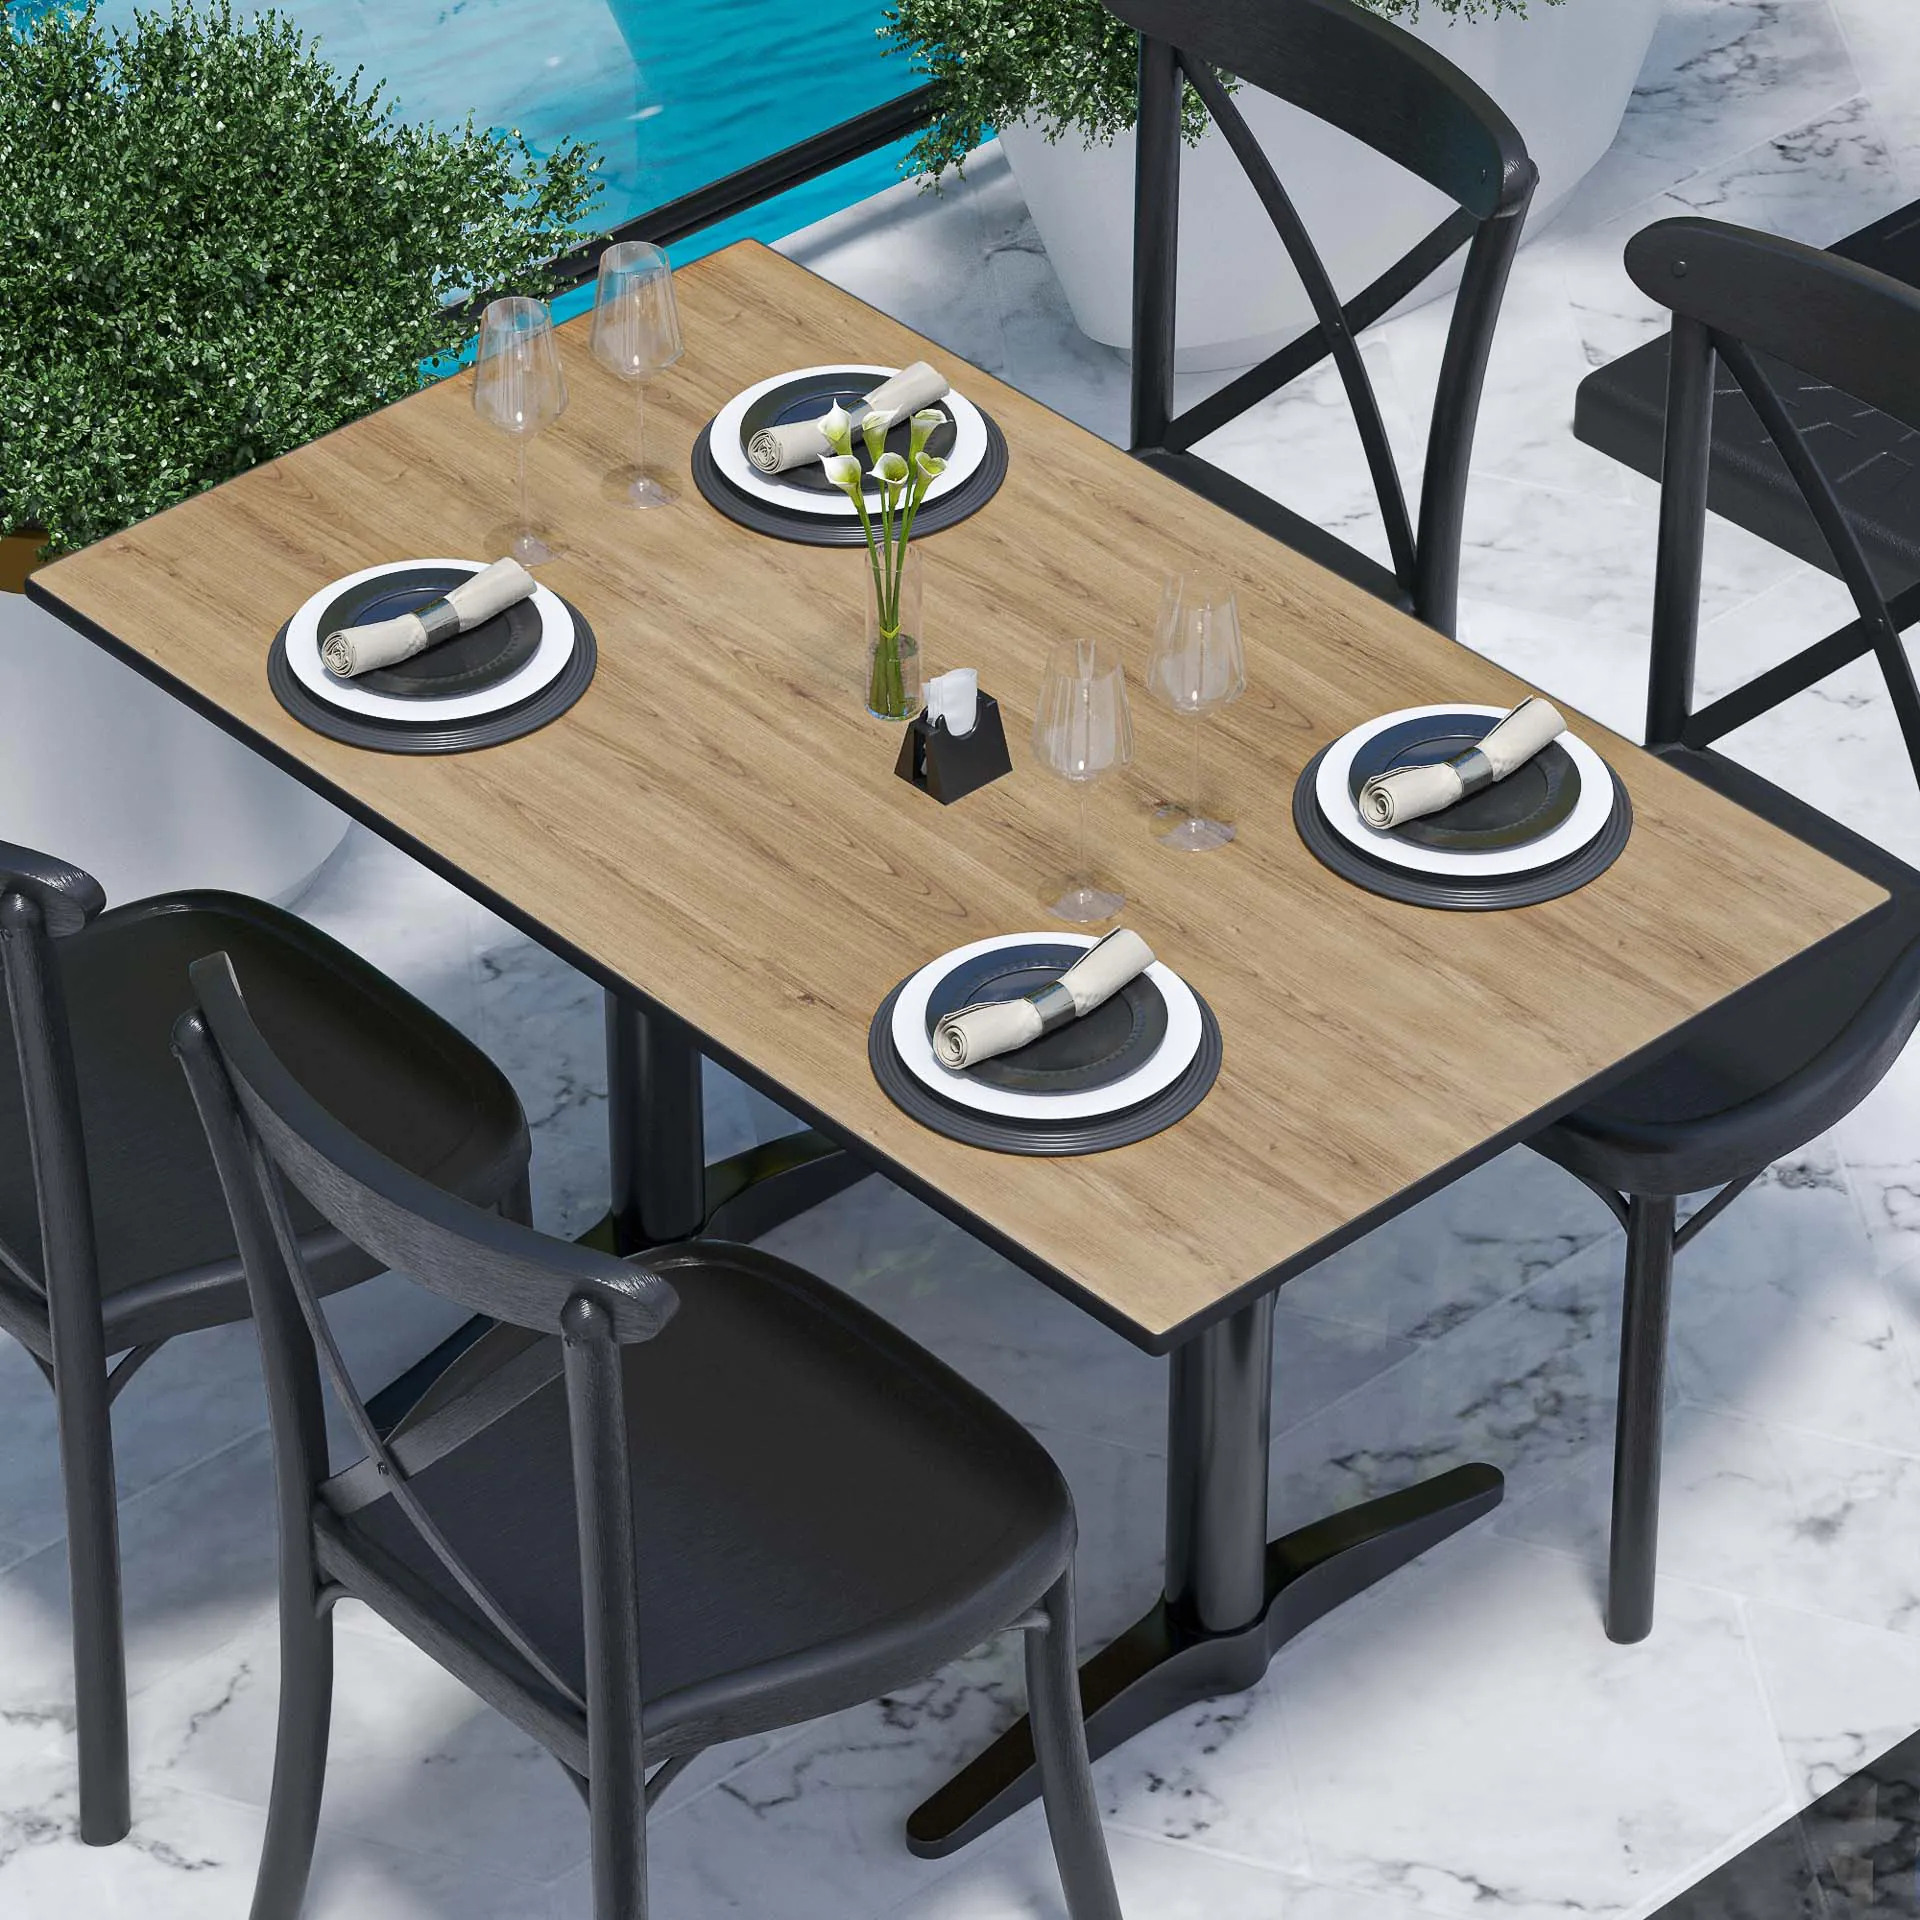 COMPACT | Gastro HPL Tischplatte | B:T 120 x 70 cm | Eiche | Rechteckig -  Gastronomiemöbel von GGM Möbel mit Tiefpreis-Garantie